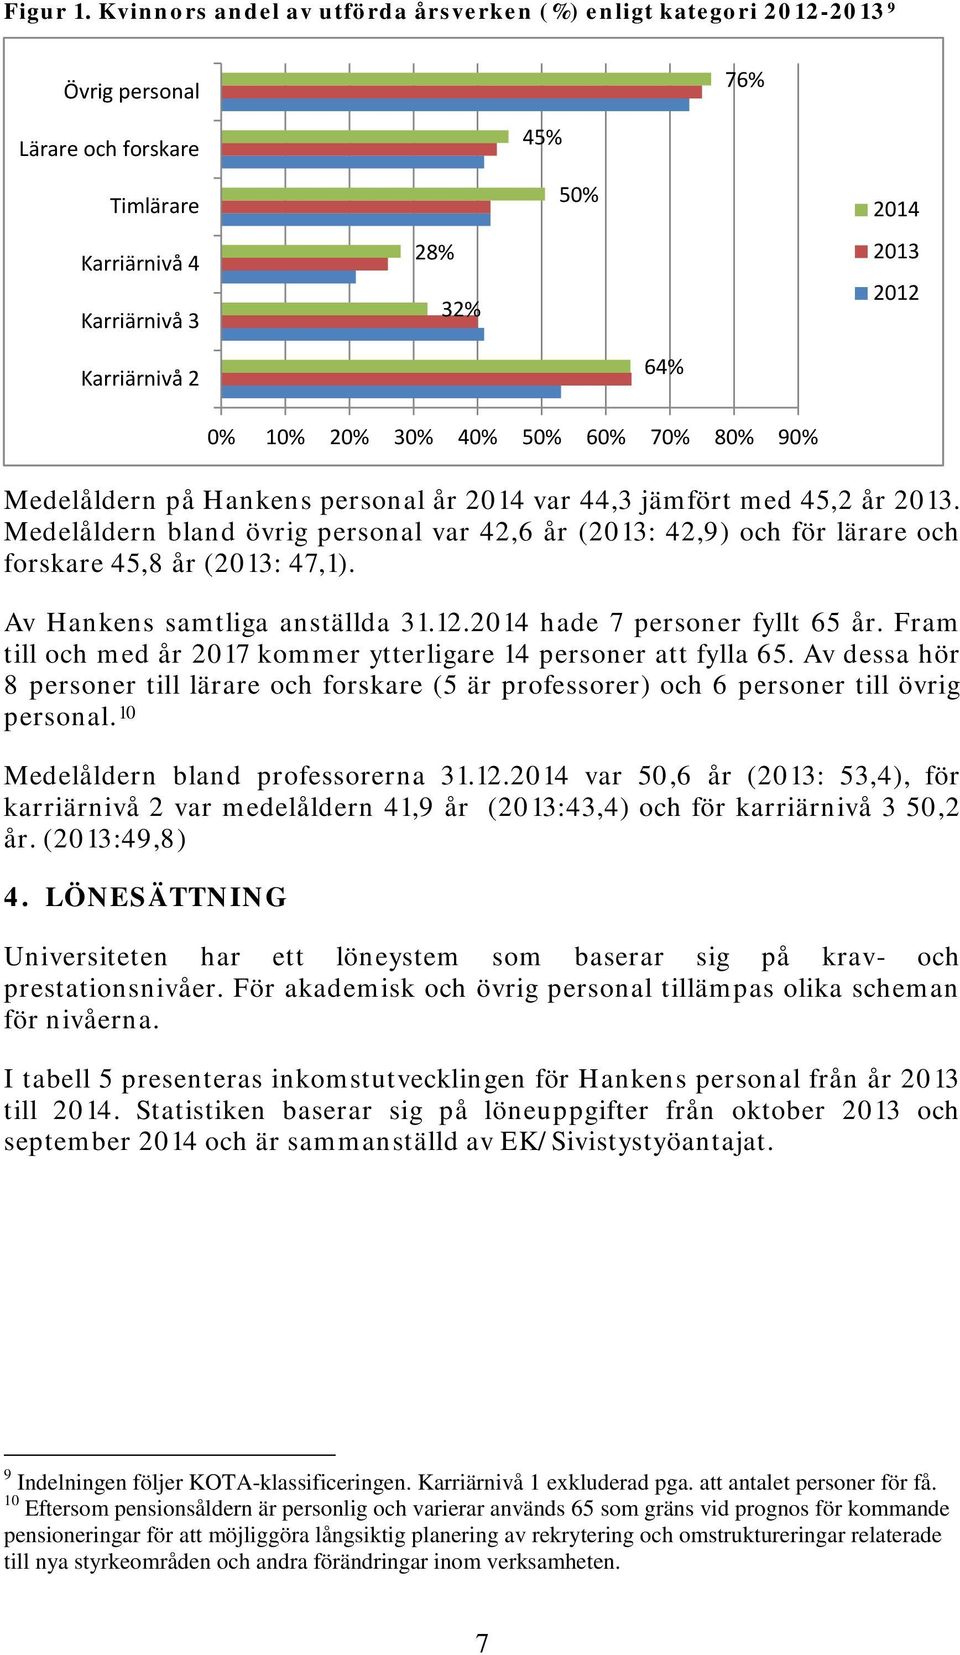 Medelåldern på Hankens personal år 2014 var 44,3 jämfört med 45,2 år 2013. Medelåldern bland övrig personal var 42,6 år (2013: 42,9) och för lärare och forskare 45,8 år (2013: 47,1).